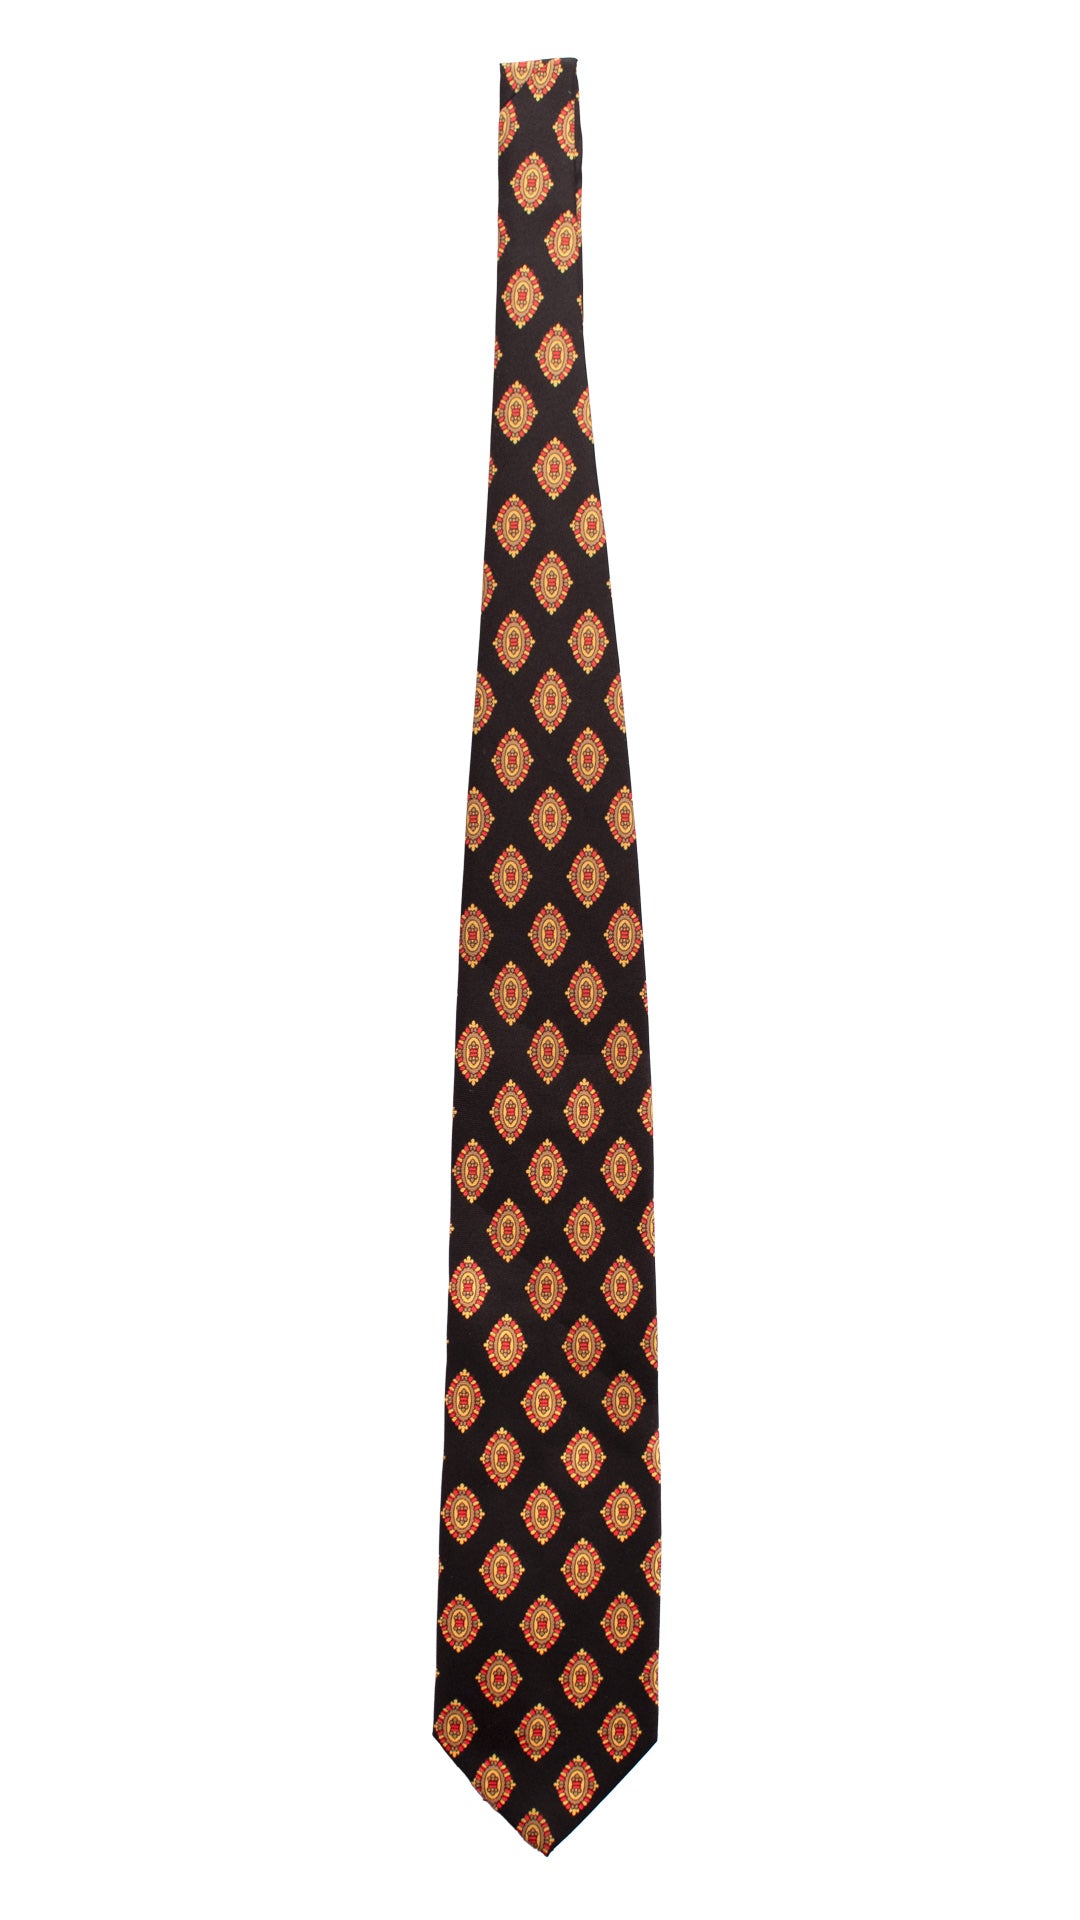 Cravatta Vintage in Twill di Seta Nera Fantasia Magenta Giallo Oro CV823 Intera